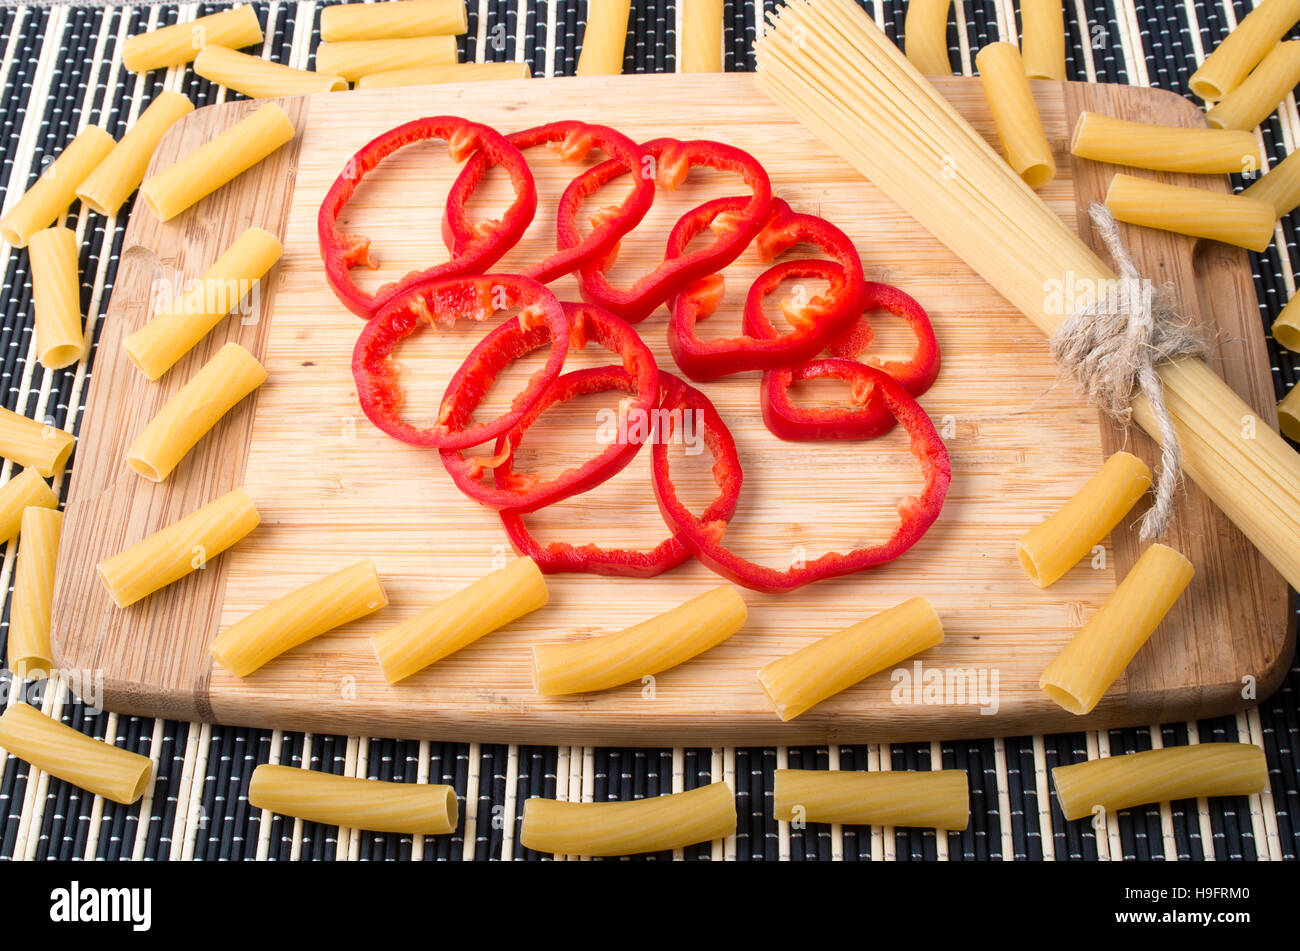 Ingrédients pour la cuisson sur la table de cuisine - pâtes italiennes et tranches de poivron rouge sur une planche en bois Banque D'Images